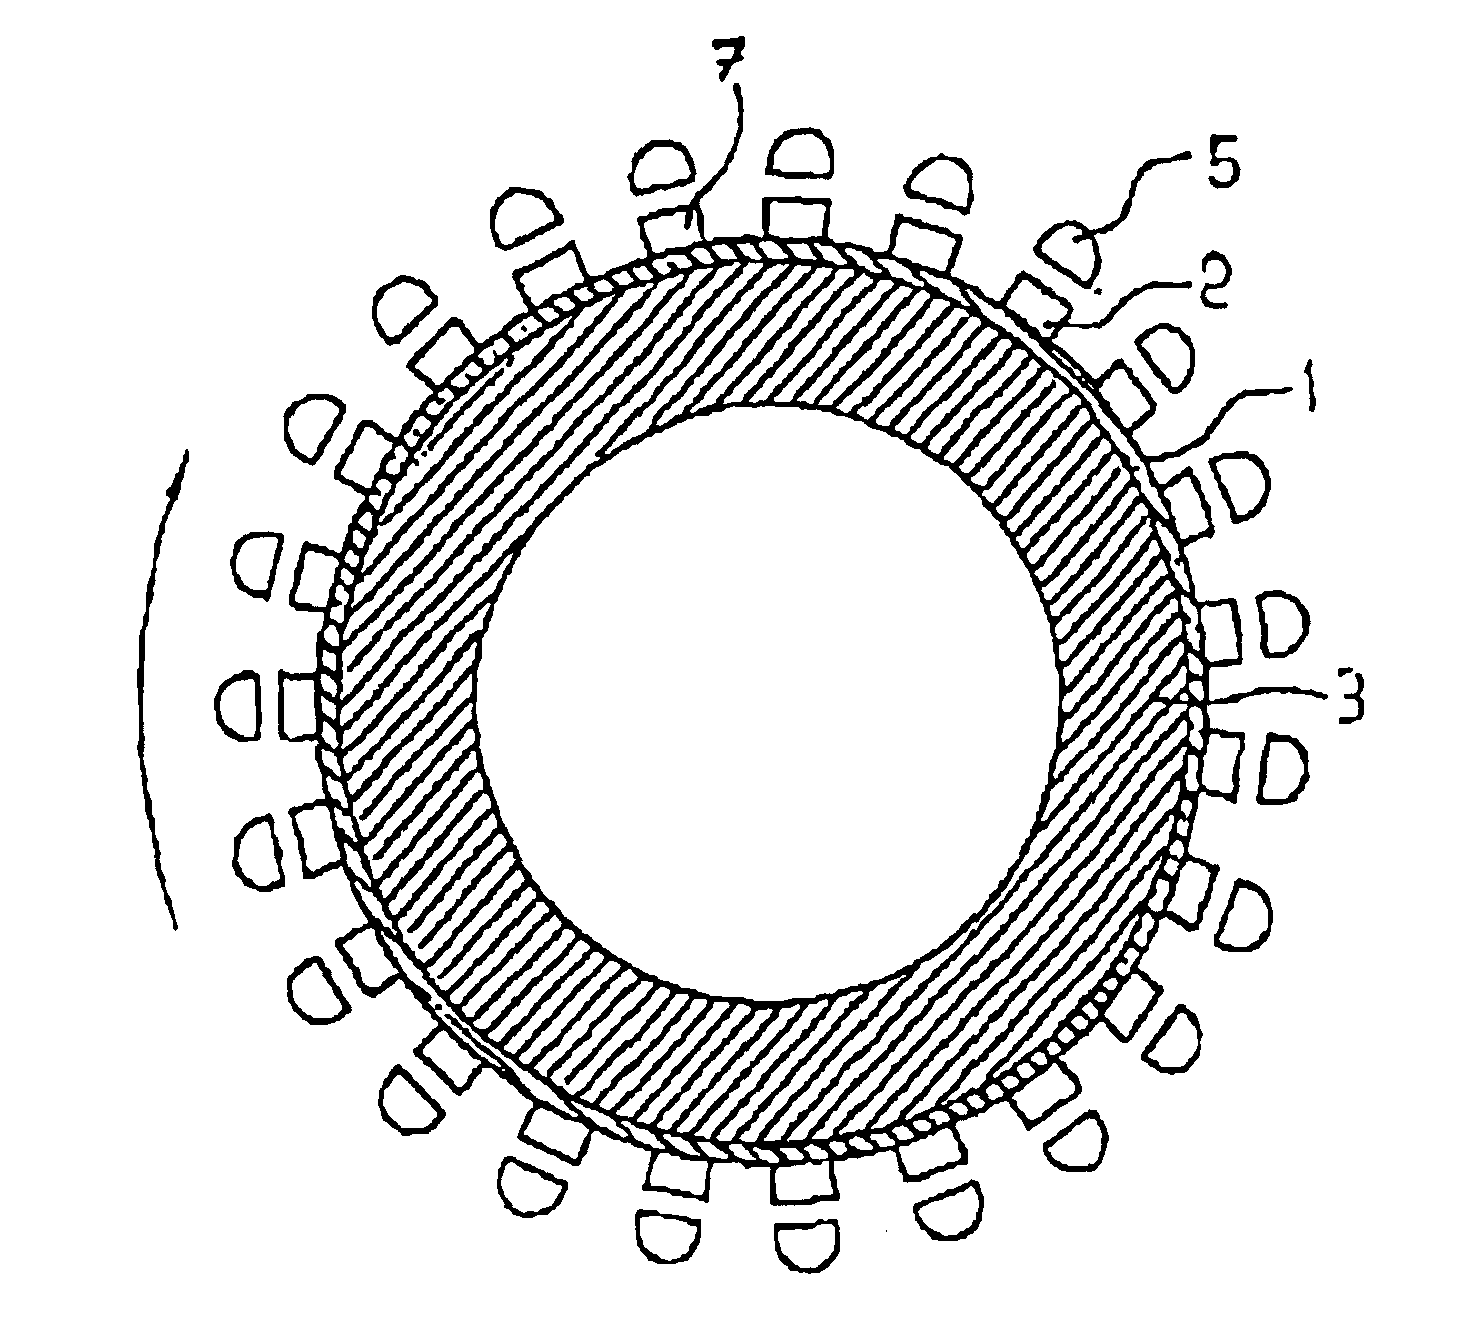 Light-emitting diode arrangement